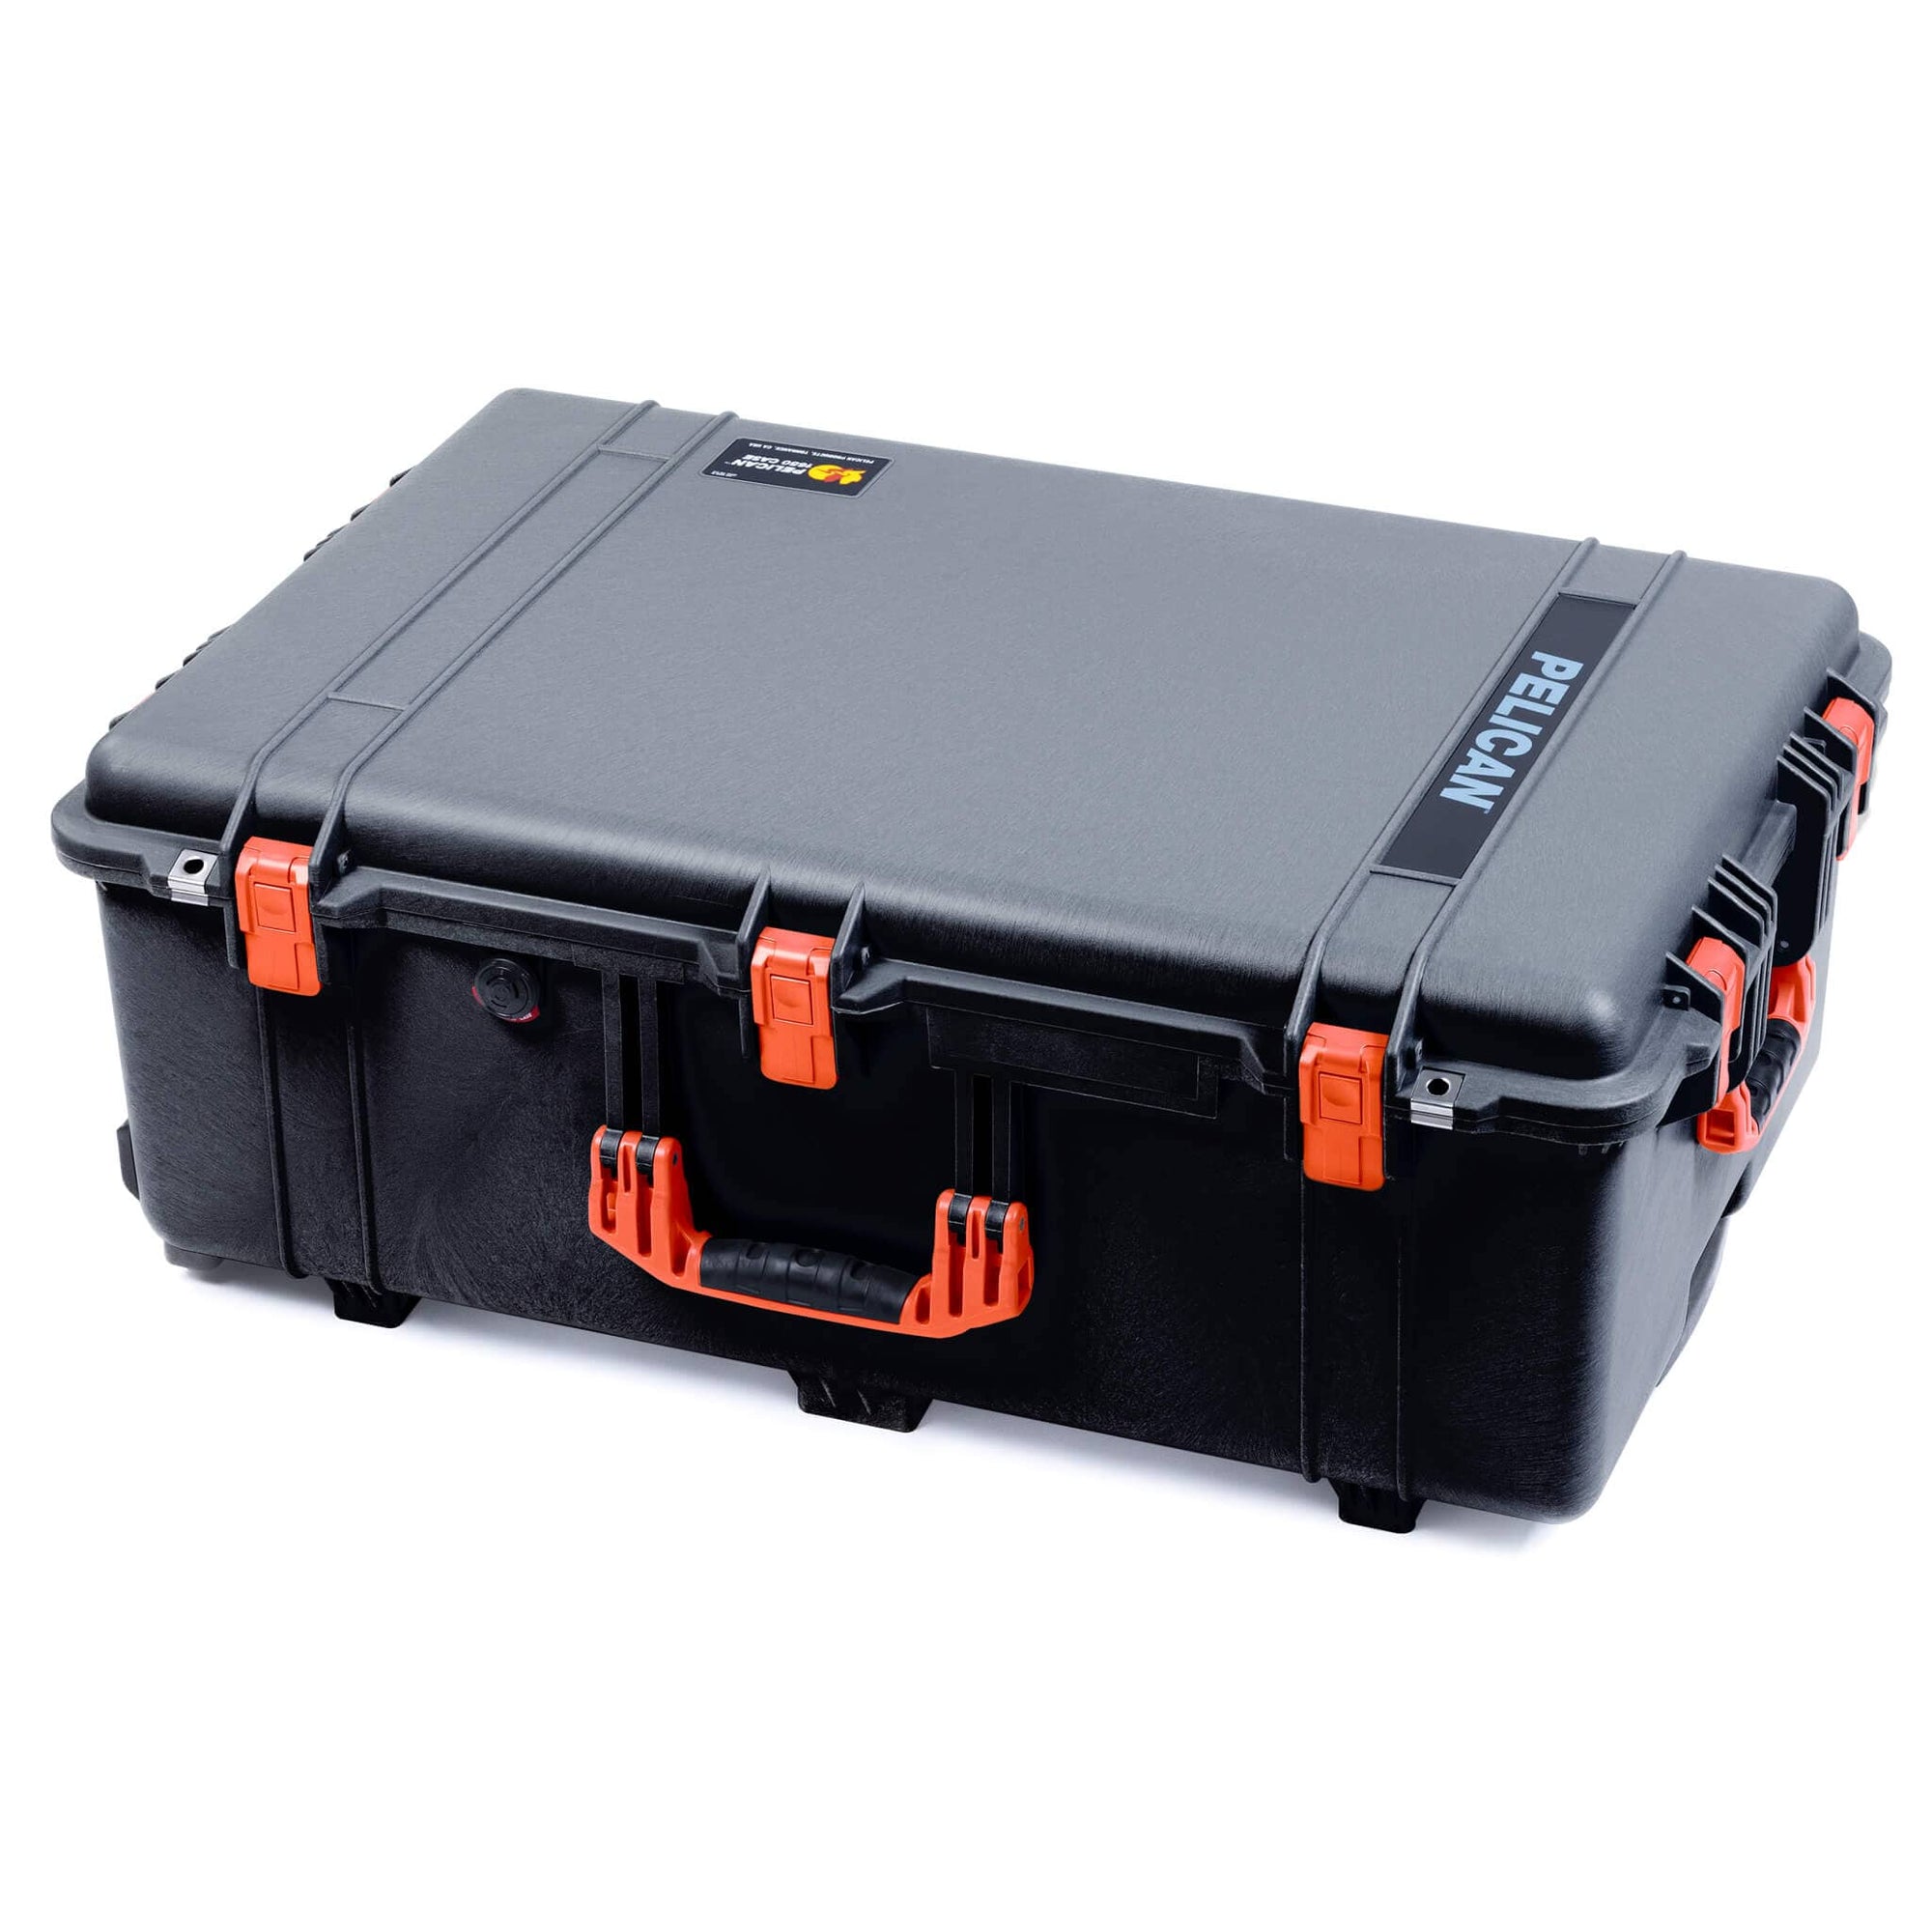 Pelican 1650 Case, Black with Orange Handles & Push-Button Latches ColorCase 